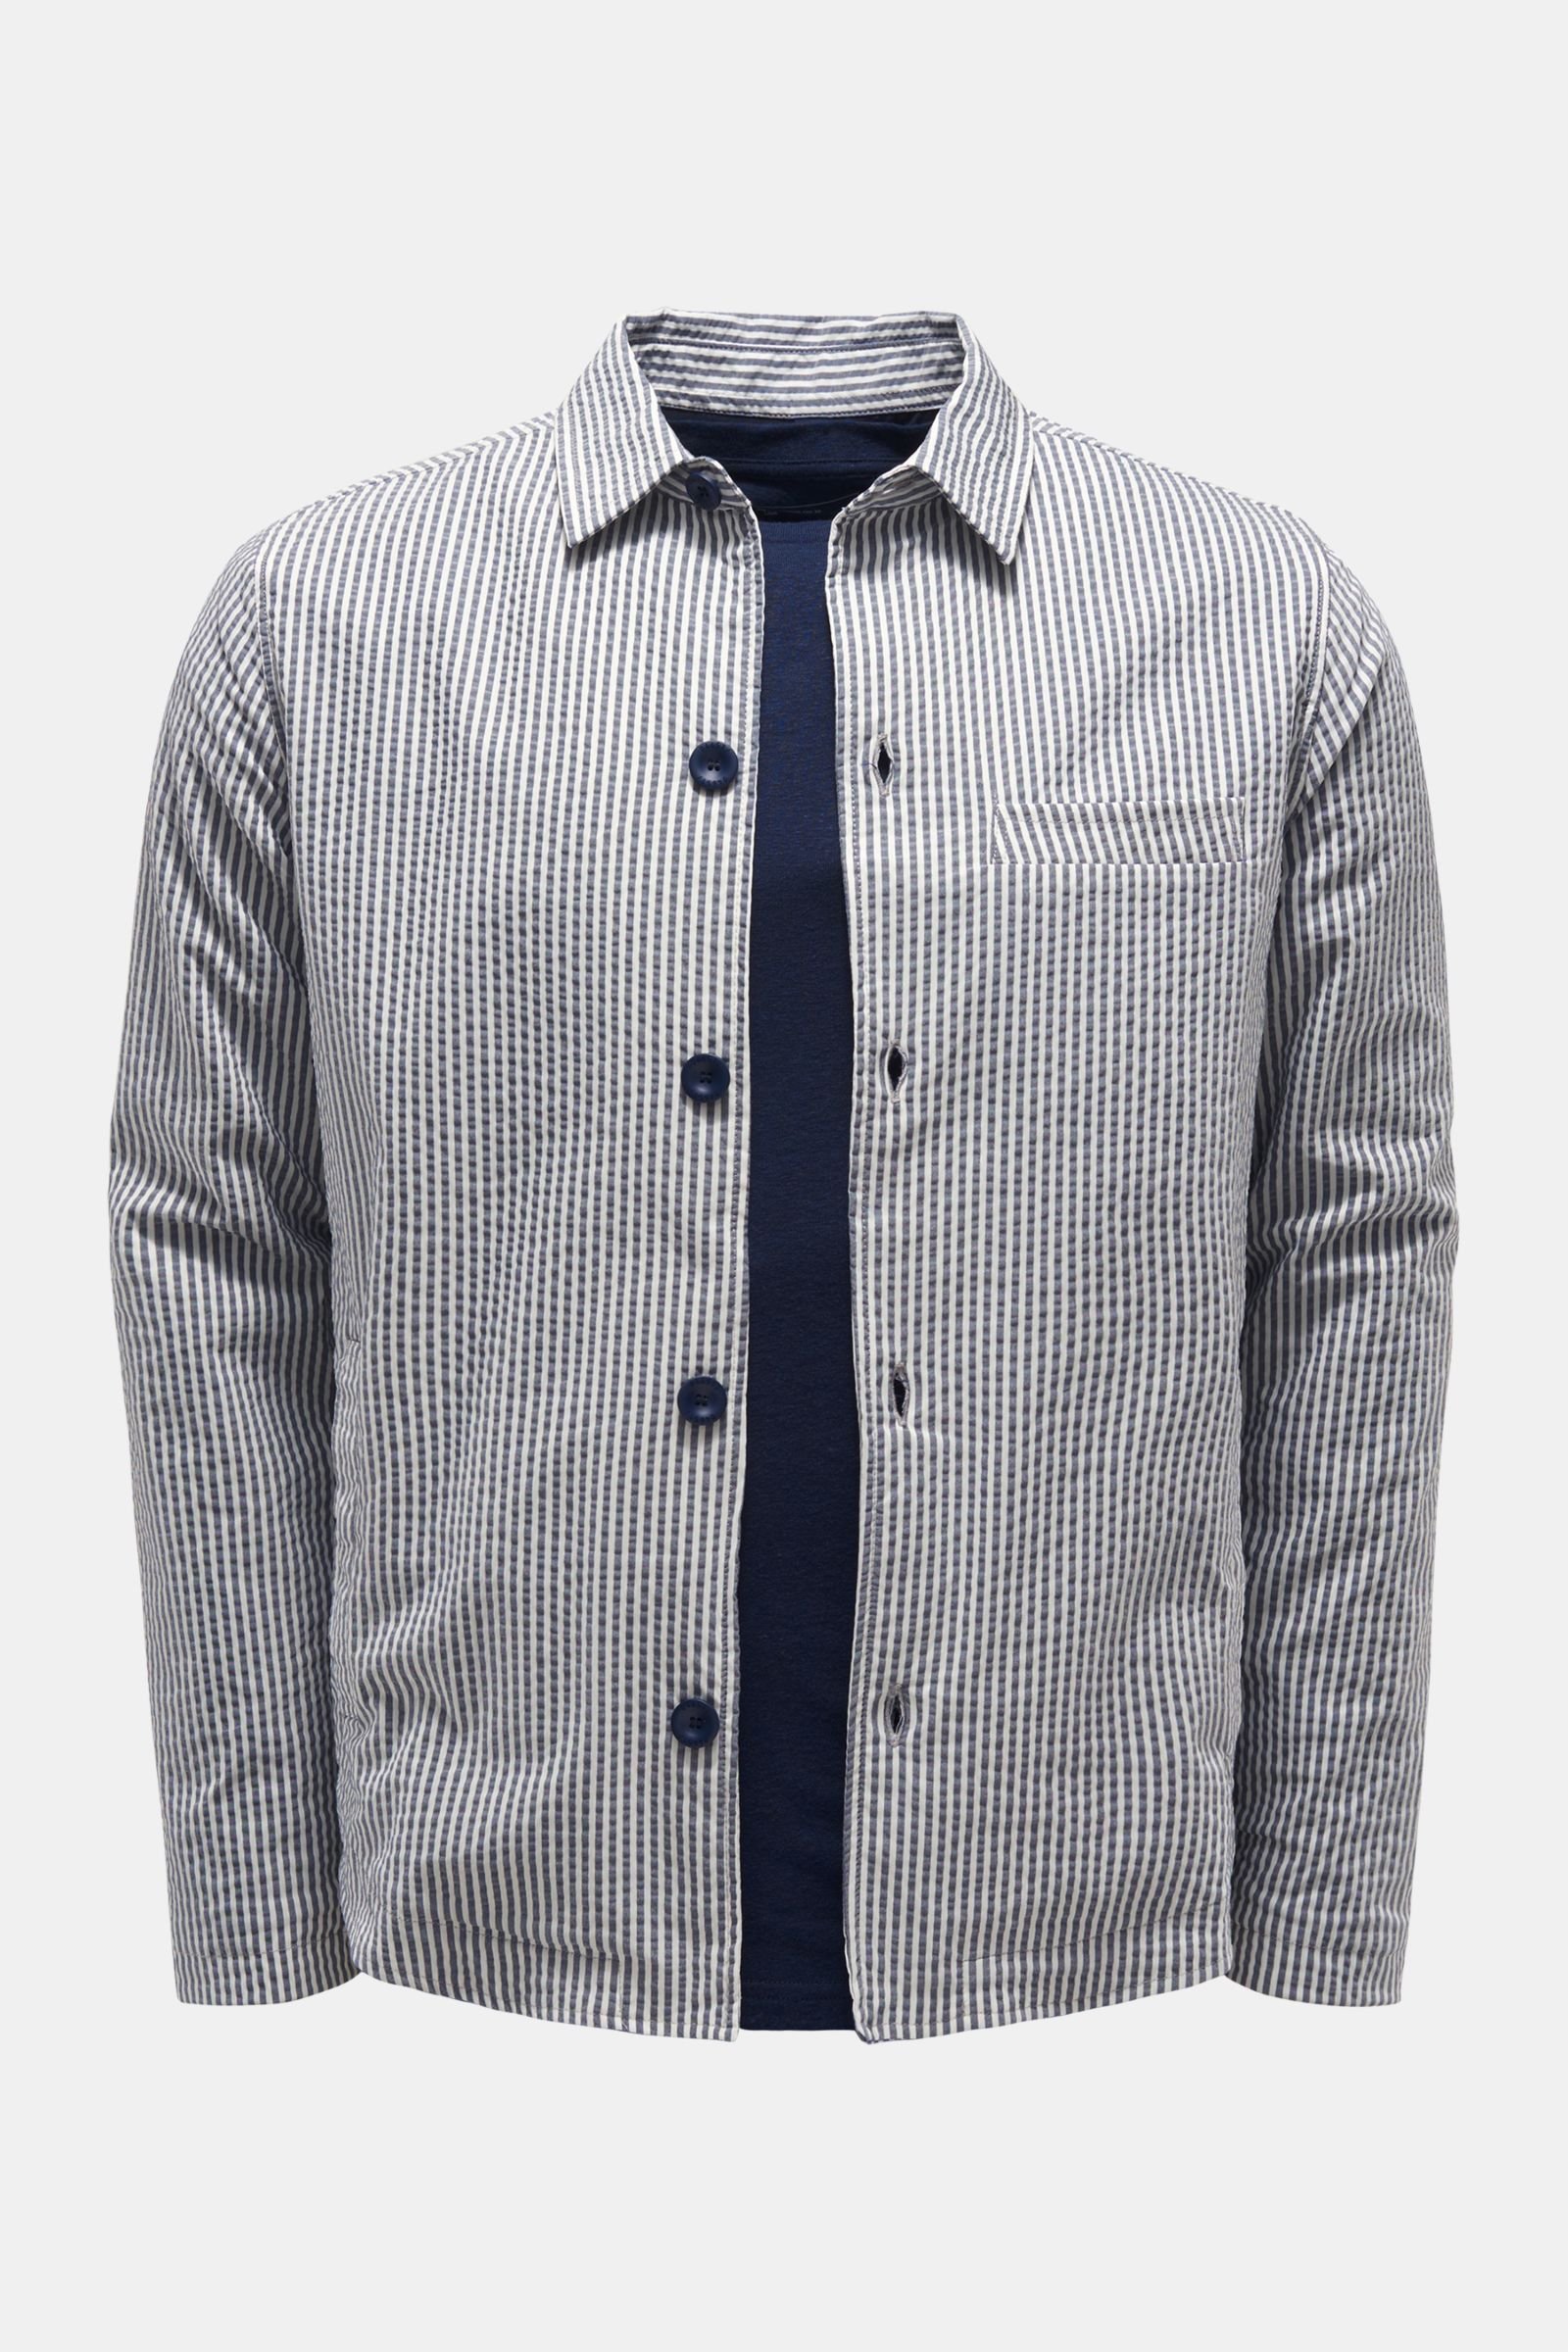 Seersucker overshirt grey-blue/white striped